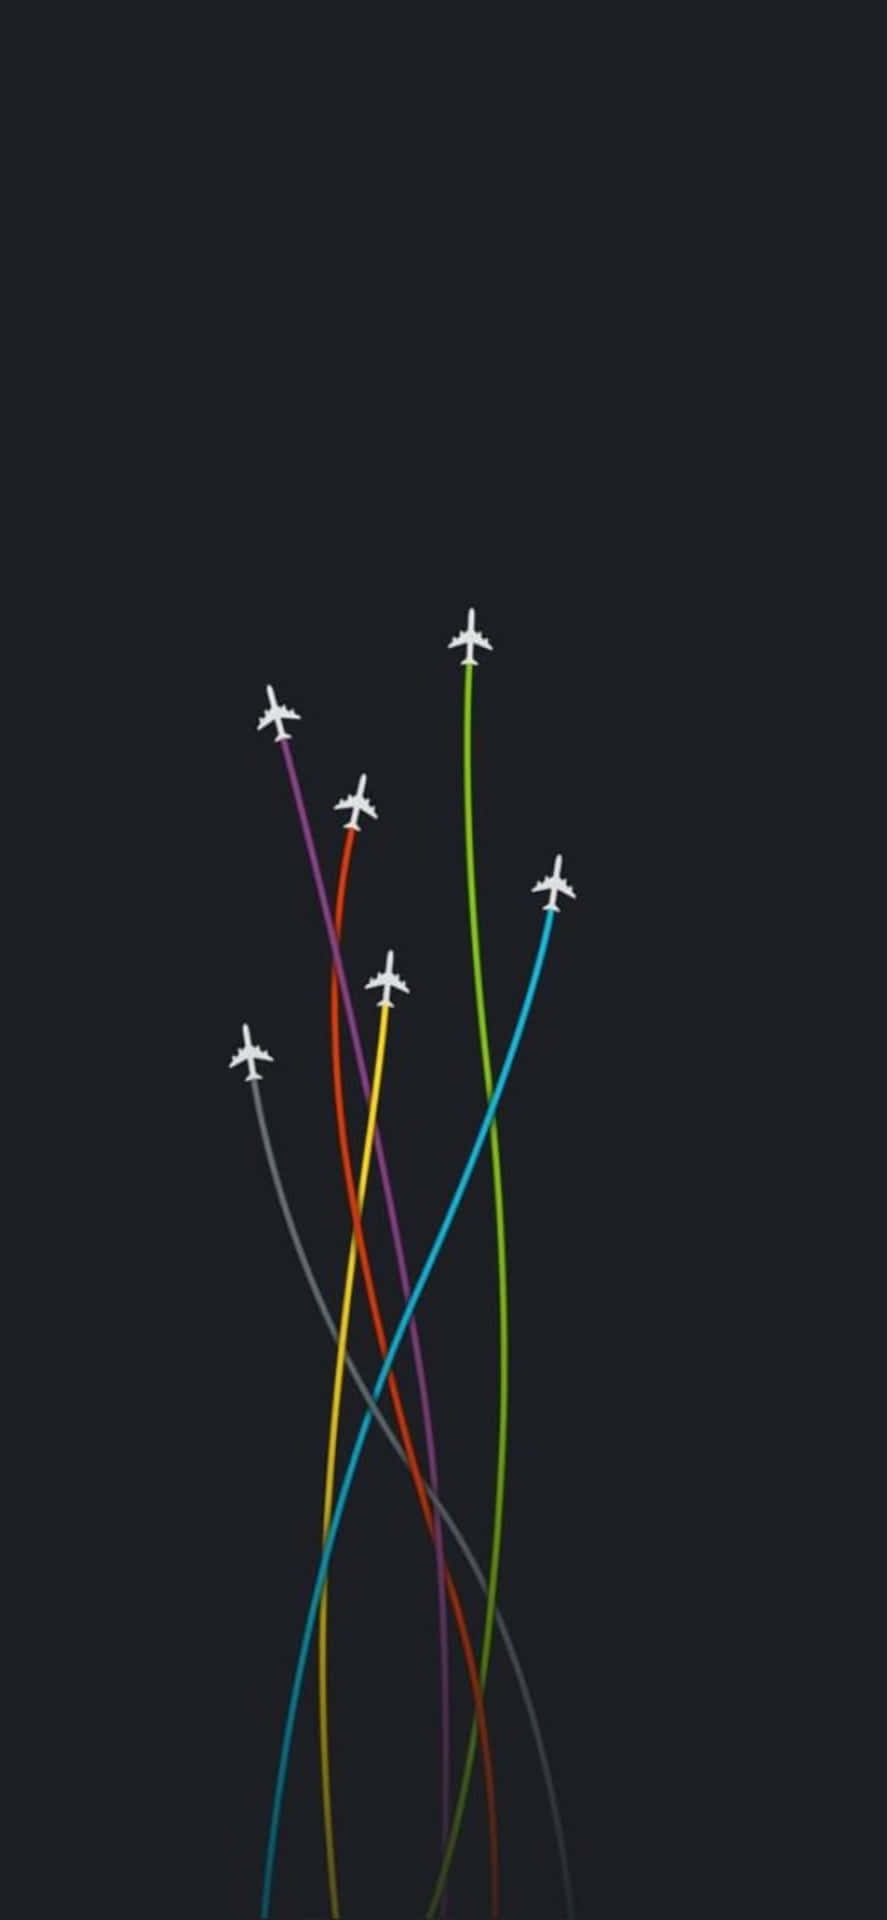 Imagenvista Aérea De Un Iphone Xs Max Volando Sobre Aviones Pequeños